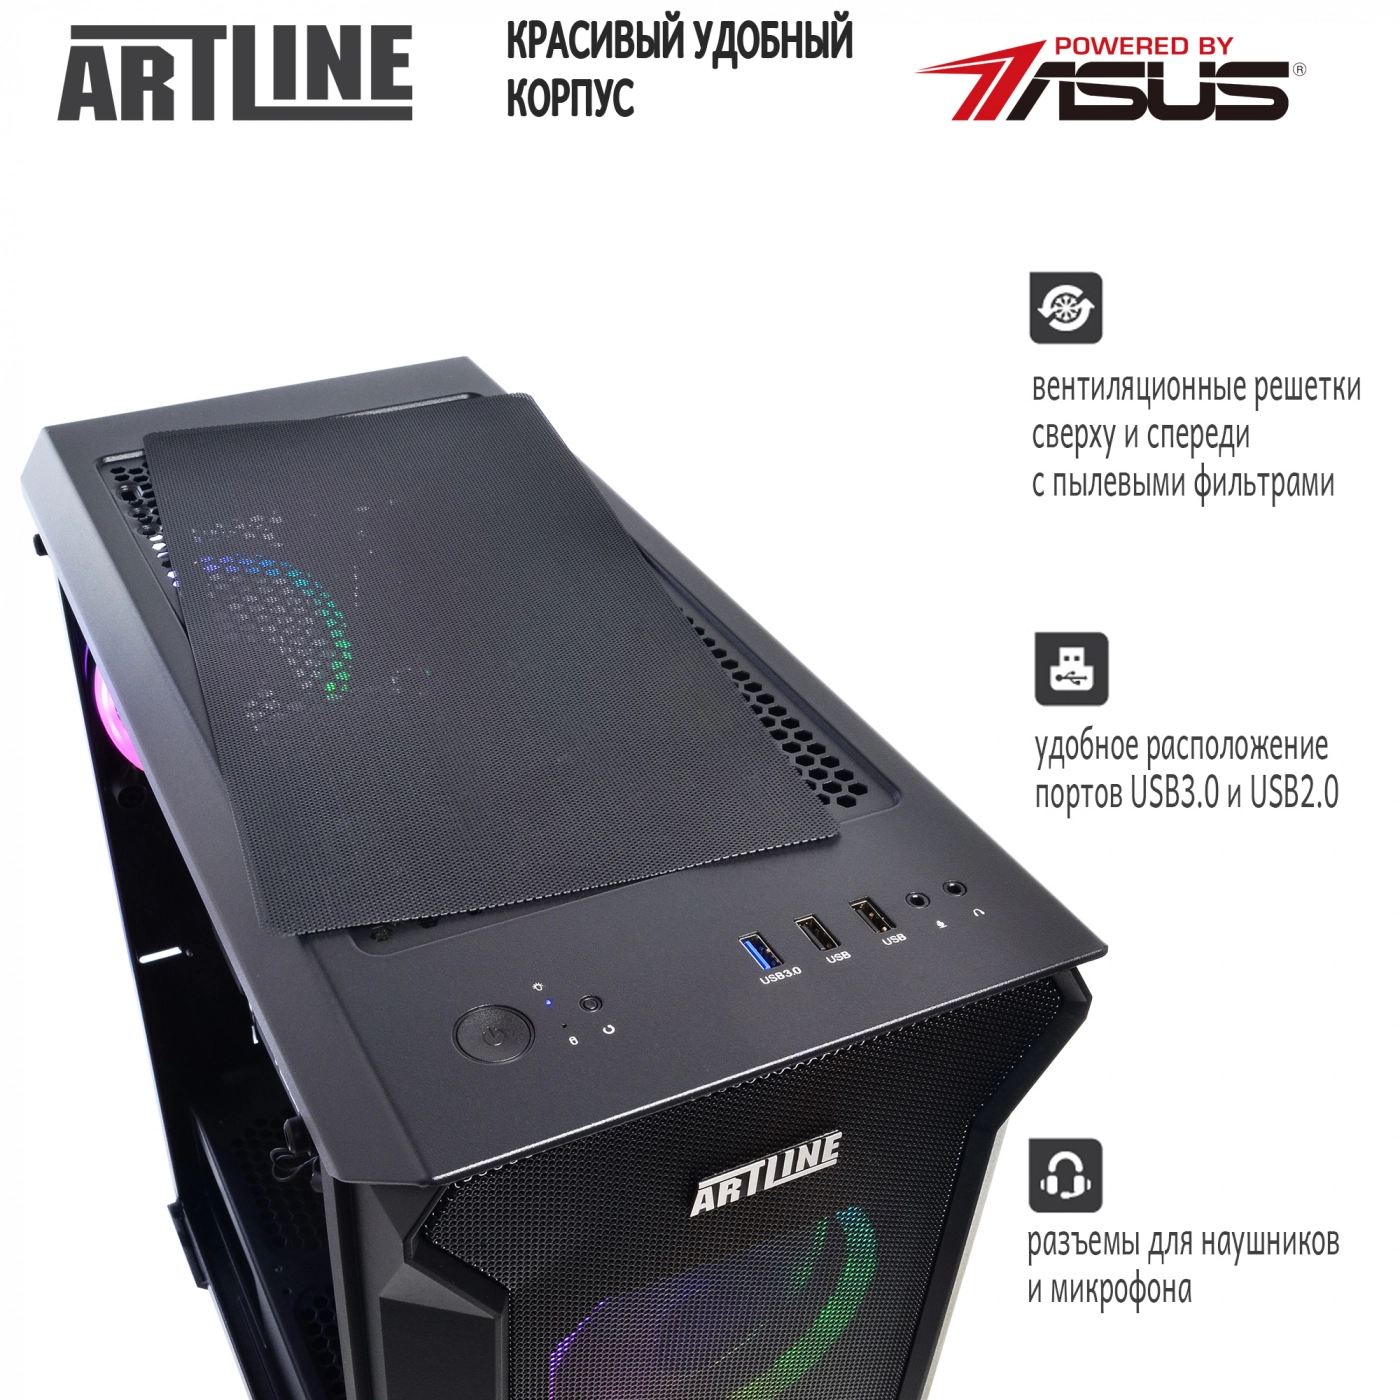 Купить Компьютер ARTLINE Gaming X75v14 - фото 5